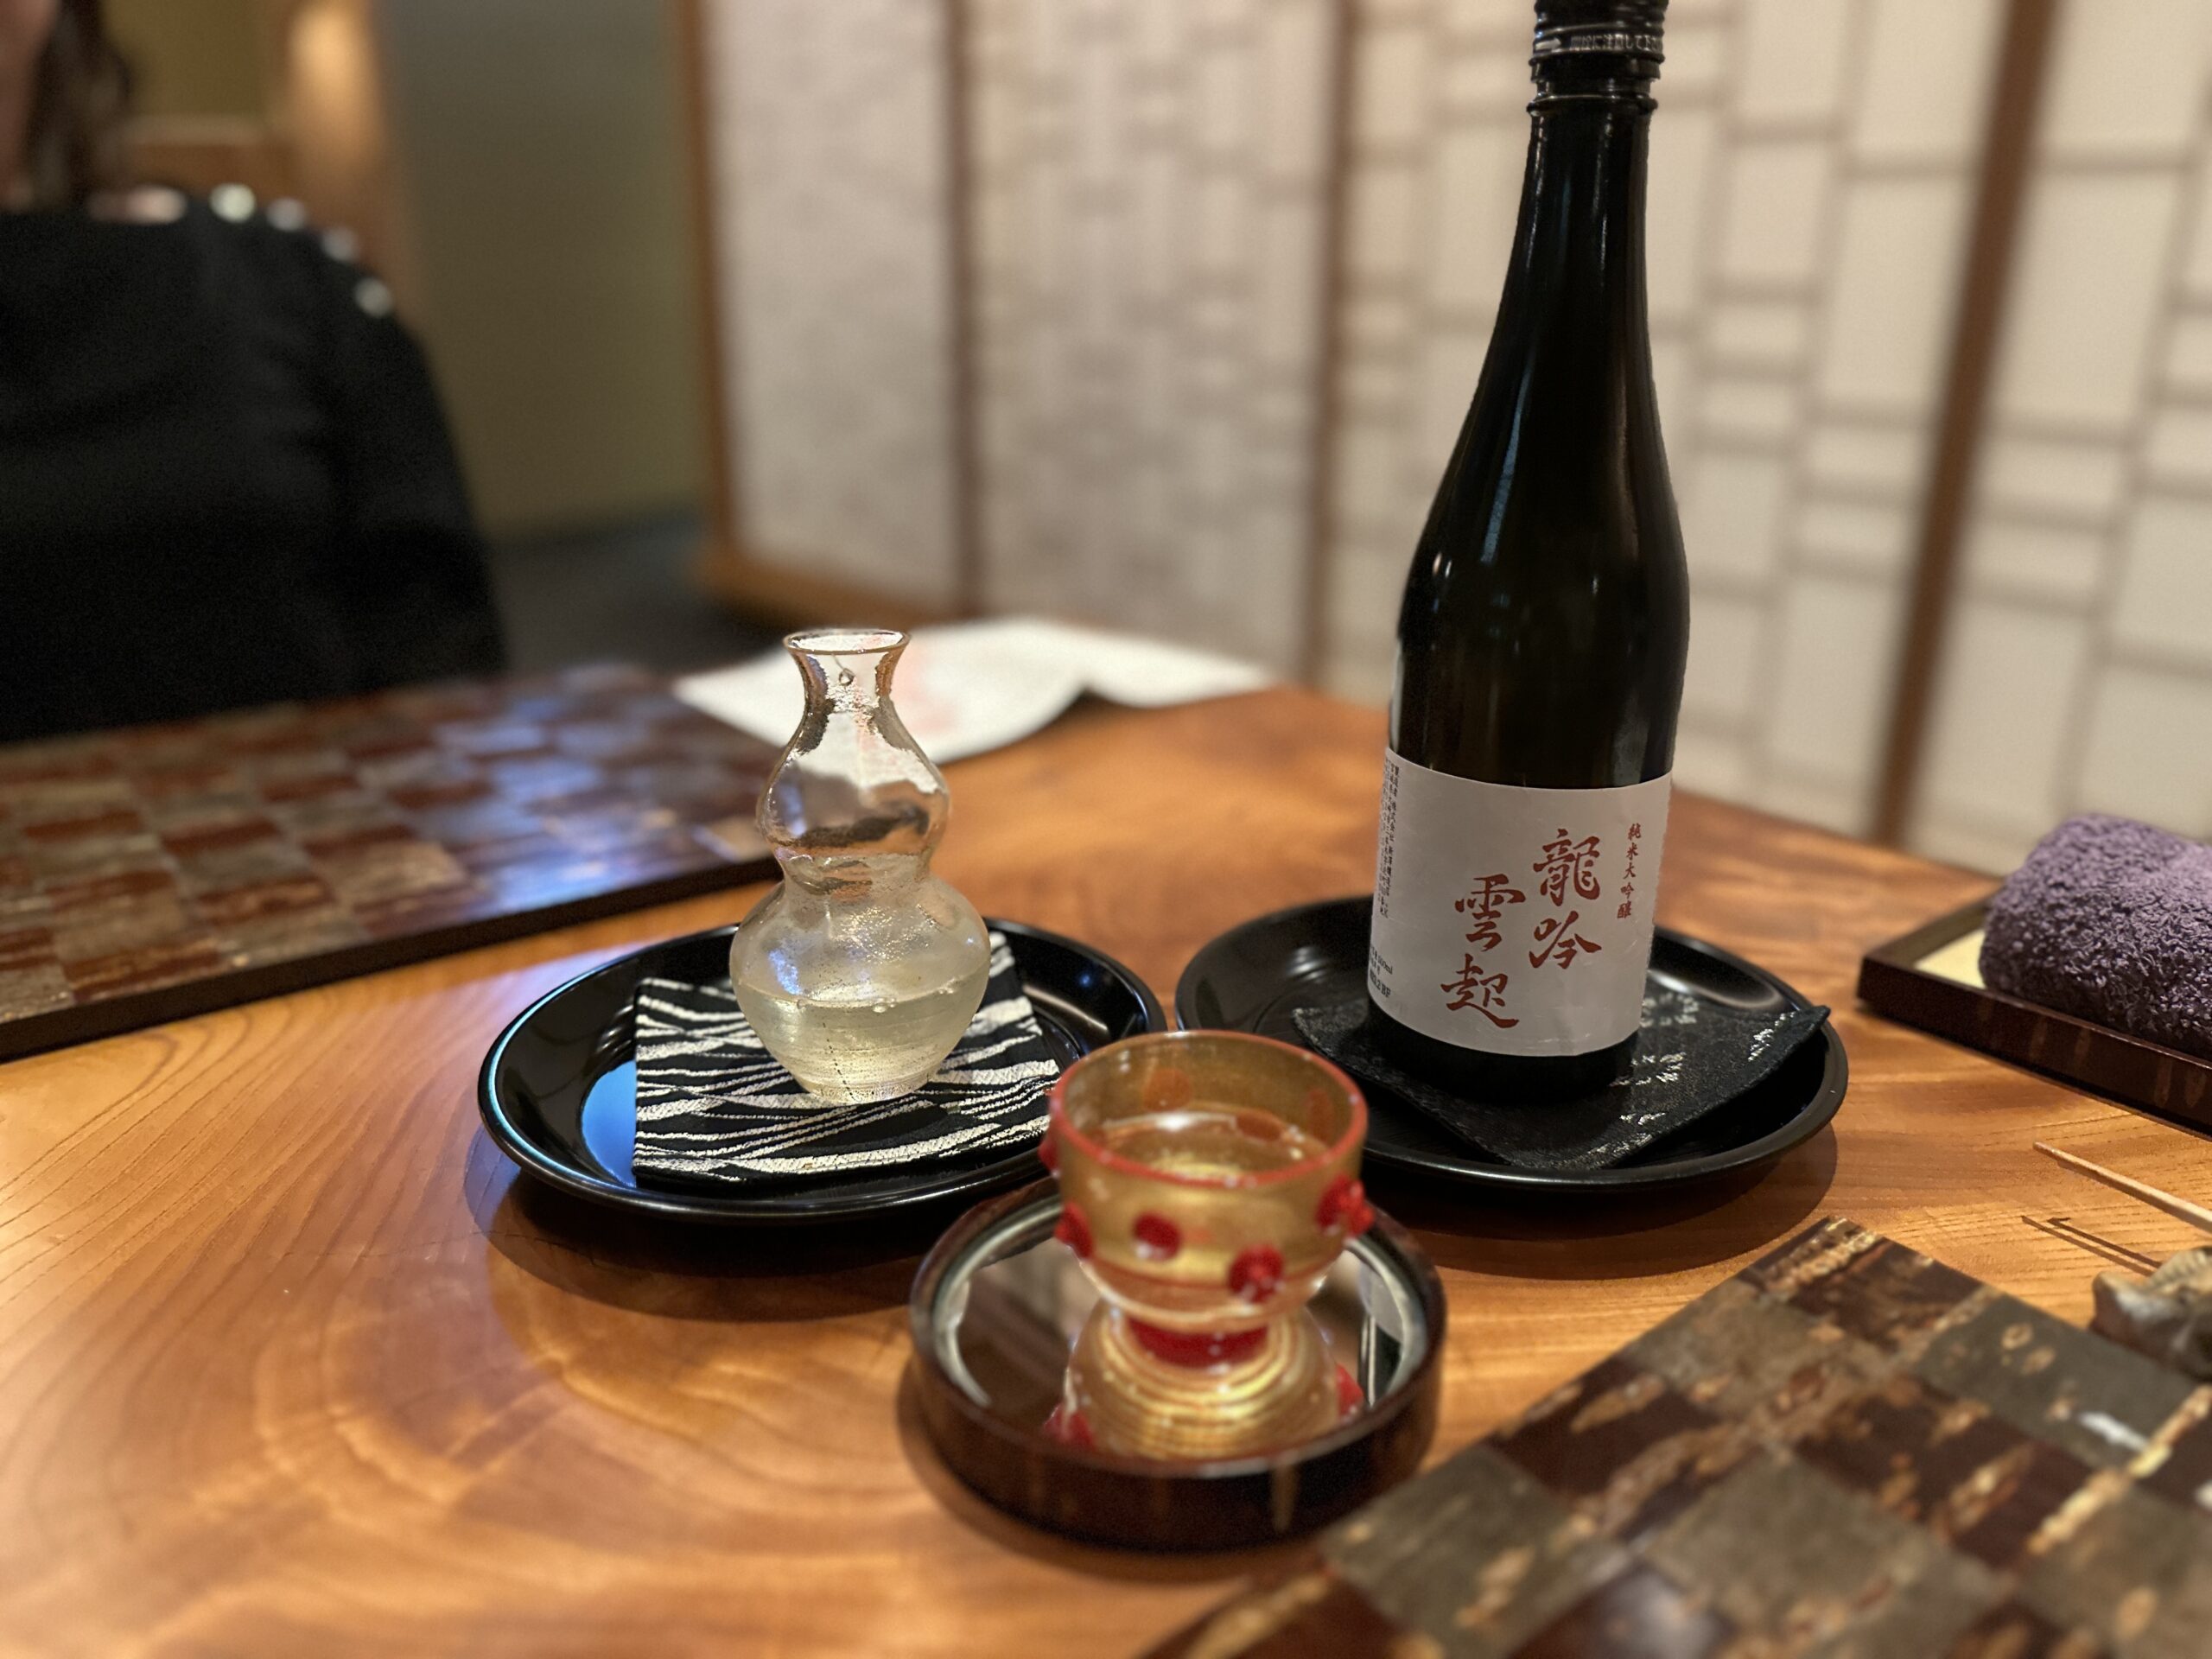 龍吟オリジナル日本酒“龍吟雲起”（純米大吟醸）。